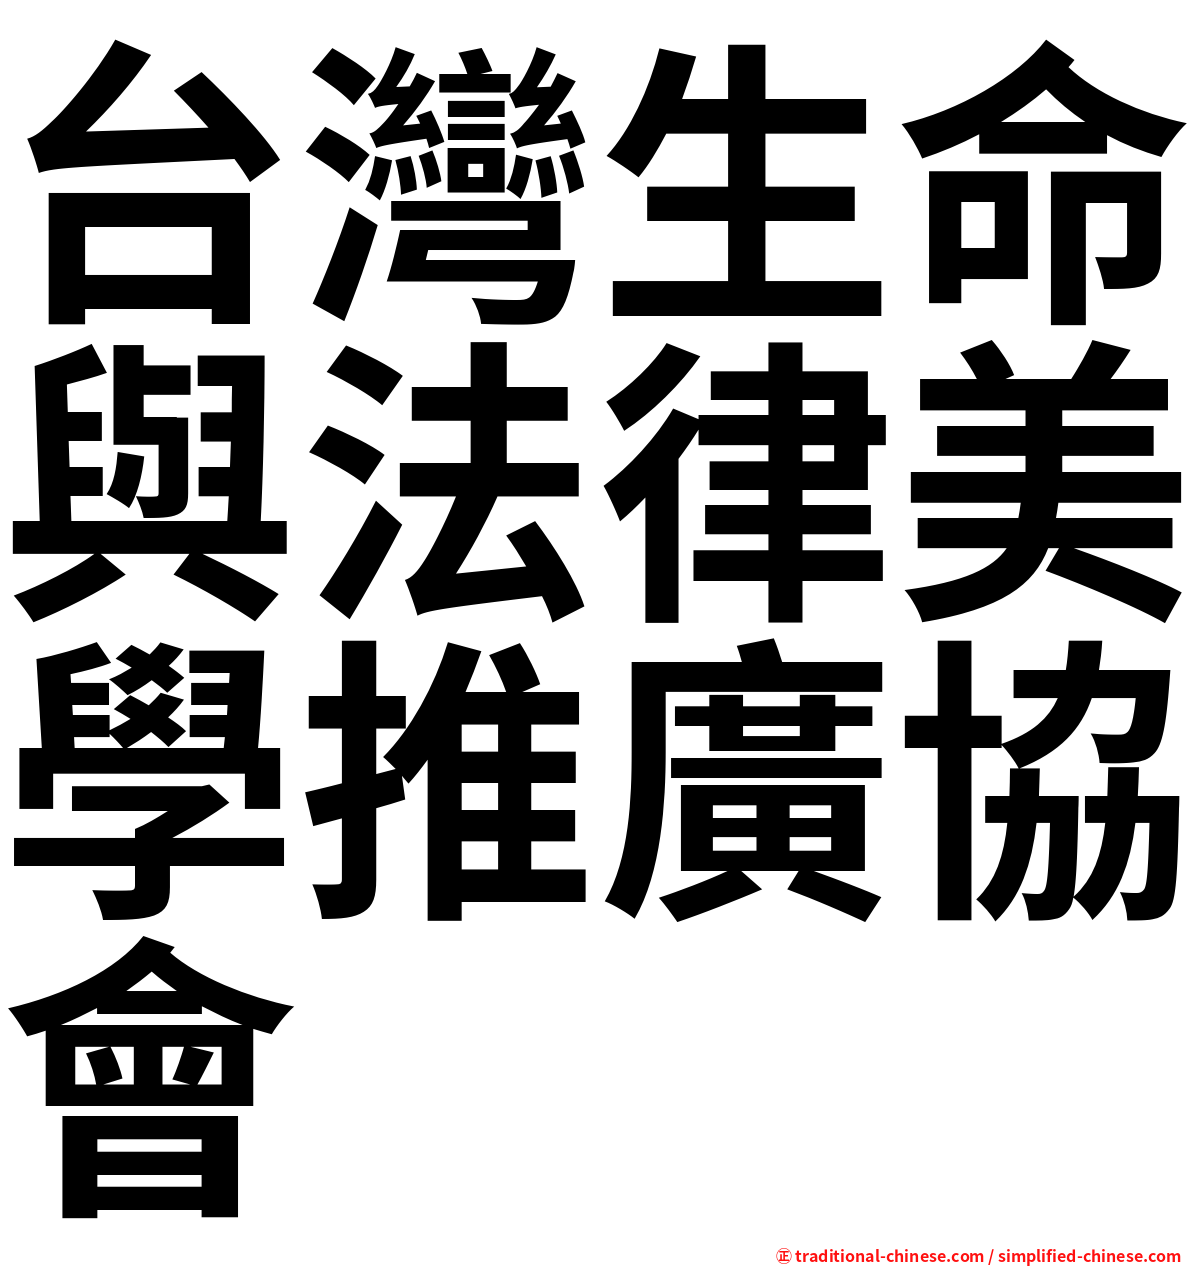 台灣生命與法律美學推廣協會